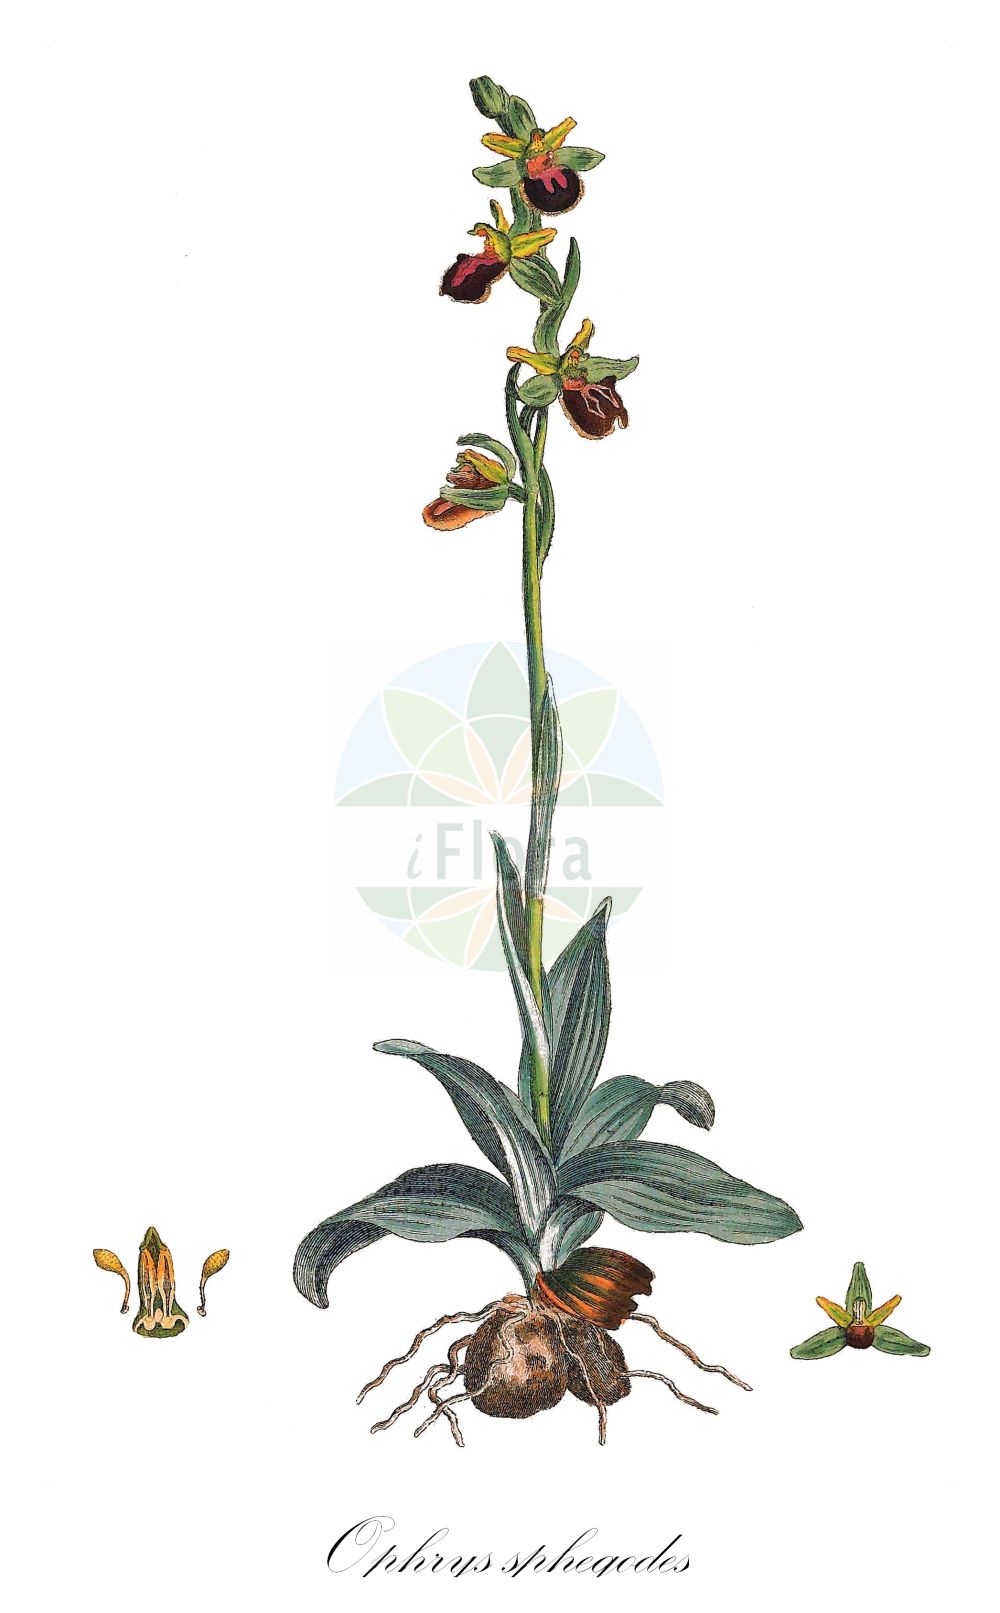 Historische Abbildung von Ophrys sphegodes (Echte Spinnen-Ragwurz - Early Spider-orchid). Das Bild zeigt Blatt, Bluete, Frucht und Same. ---- Historical Drawing of Ophrys sphegodes (Echte Spinnen-Ragwurz - Early Spider-orchid). The image is showing leaf, flower, fruit and seed.(Ophrys sphegodes,Echte Spinnen-Ragwurz,Early Spider-orchid,Ophrys sphegodes,Echte Spinnen-Ragwurz,Spinnen-Ragwurz,Early Spider-orchid,Ophrys,Ragwurz,Bee Orchid,Orchidaceae,Knabenkrautgewächse,Orchid family,Blatt,Bluete,Frucht,Same,leaf,flower,fruit,seed,Curtis (1777-1798))